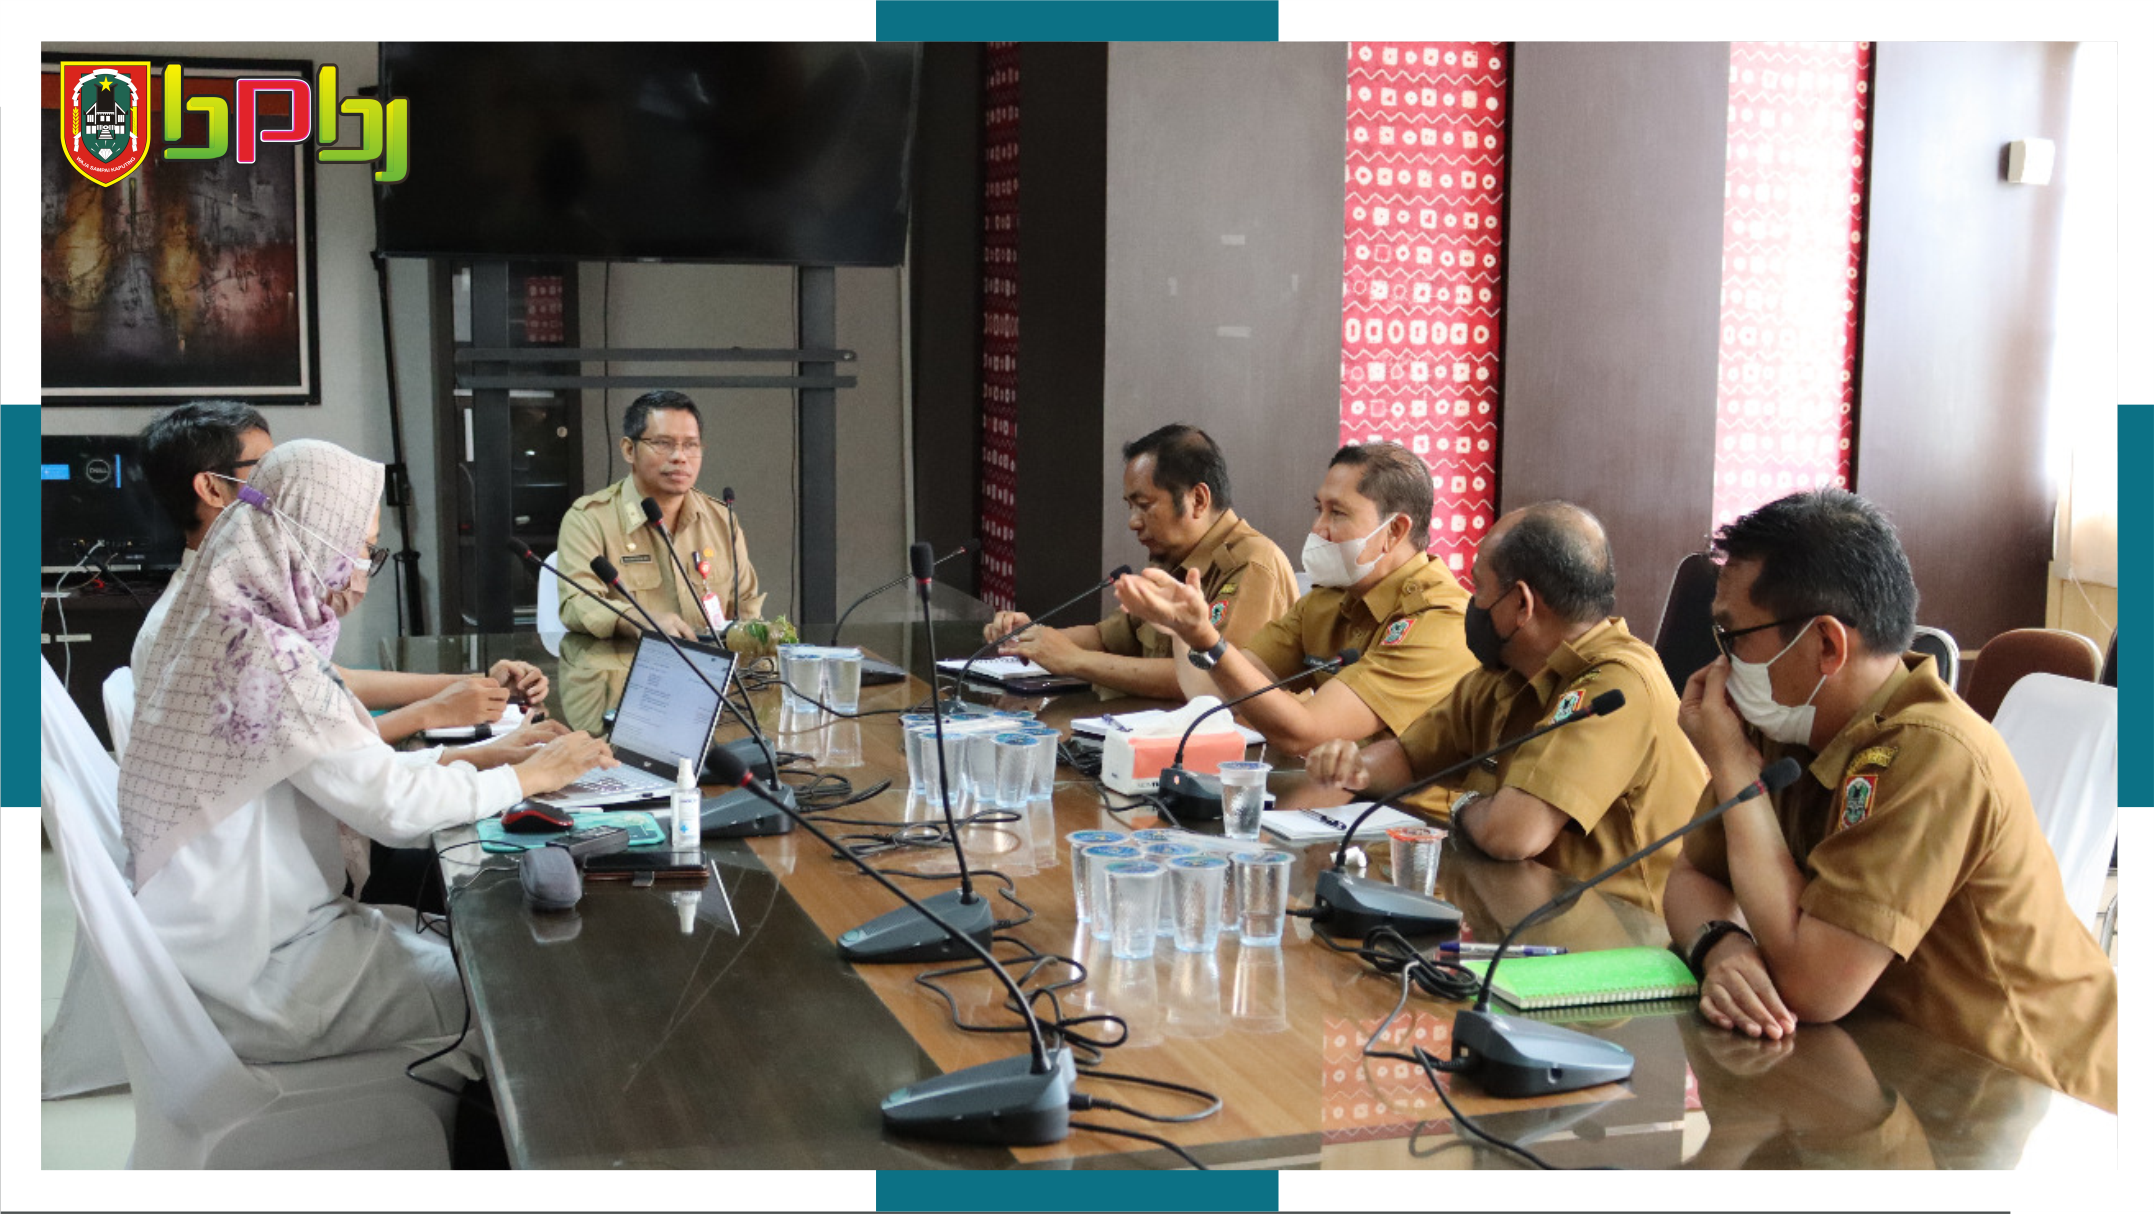 BPKP Perwakilan Provinsi Kalimantan Selatan melakukan kunjungan ke Biro PBJ Prov. Kalsel